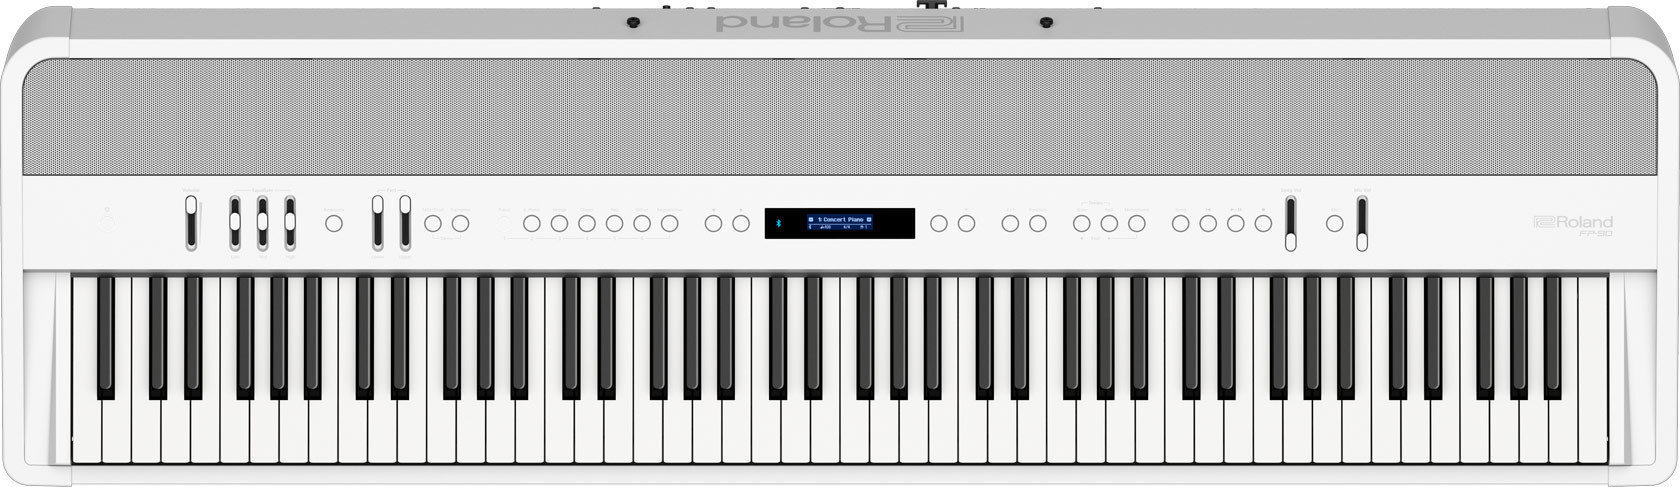 Piano de escenario digital Roland FP-90 WH Piano de escenario digital